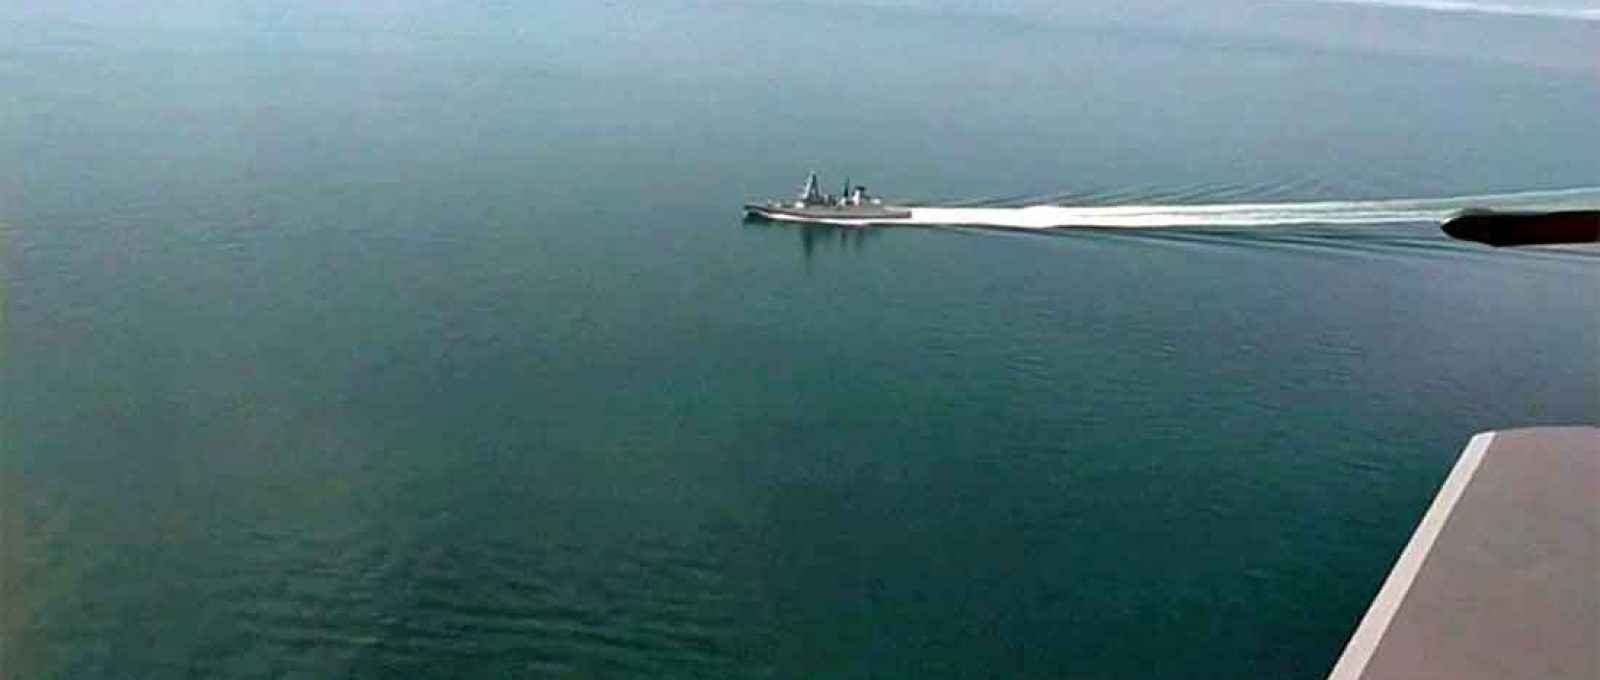 Captura de vídeo divulgado pelo Ministério da Defesa da Rússia mostra o destroier HMS Defender filmado de uma aeronave militar russa no Mar Negro, em 23 de junho de 2021 (Fonte: Ministério da Defesa da Federação Russa via Reuters).